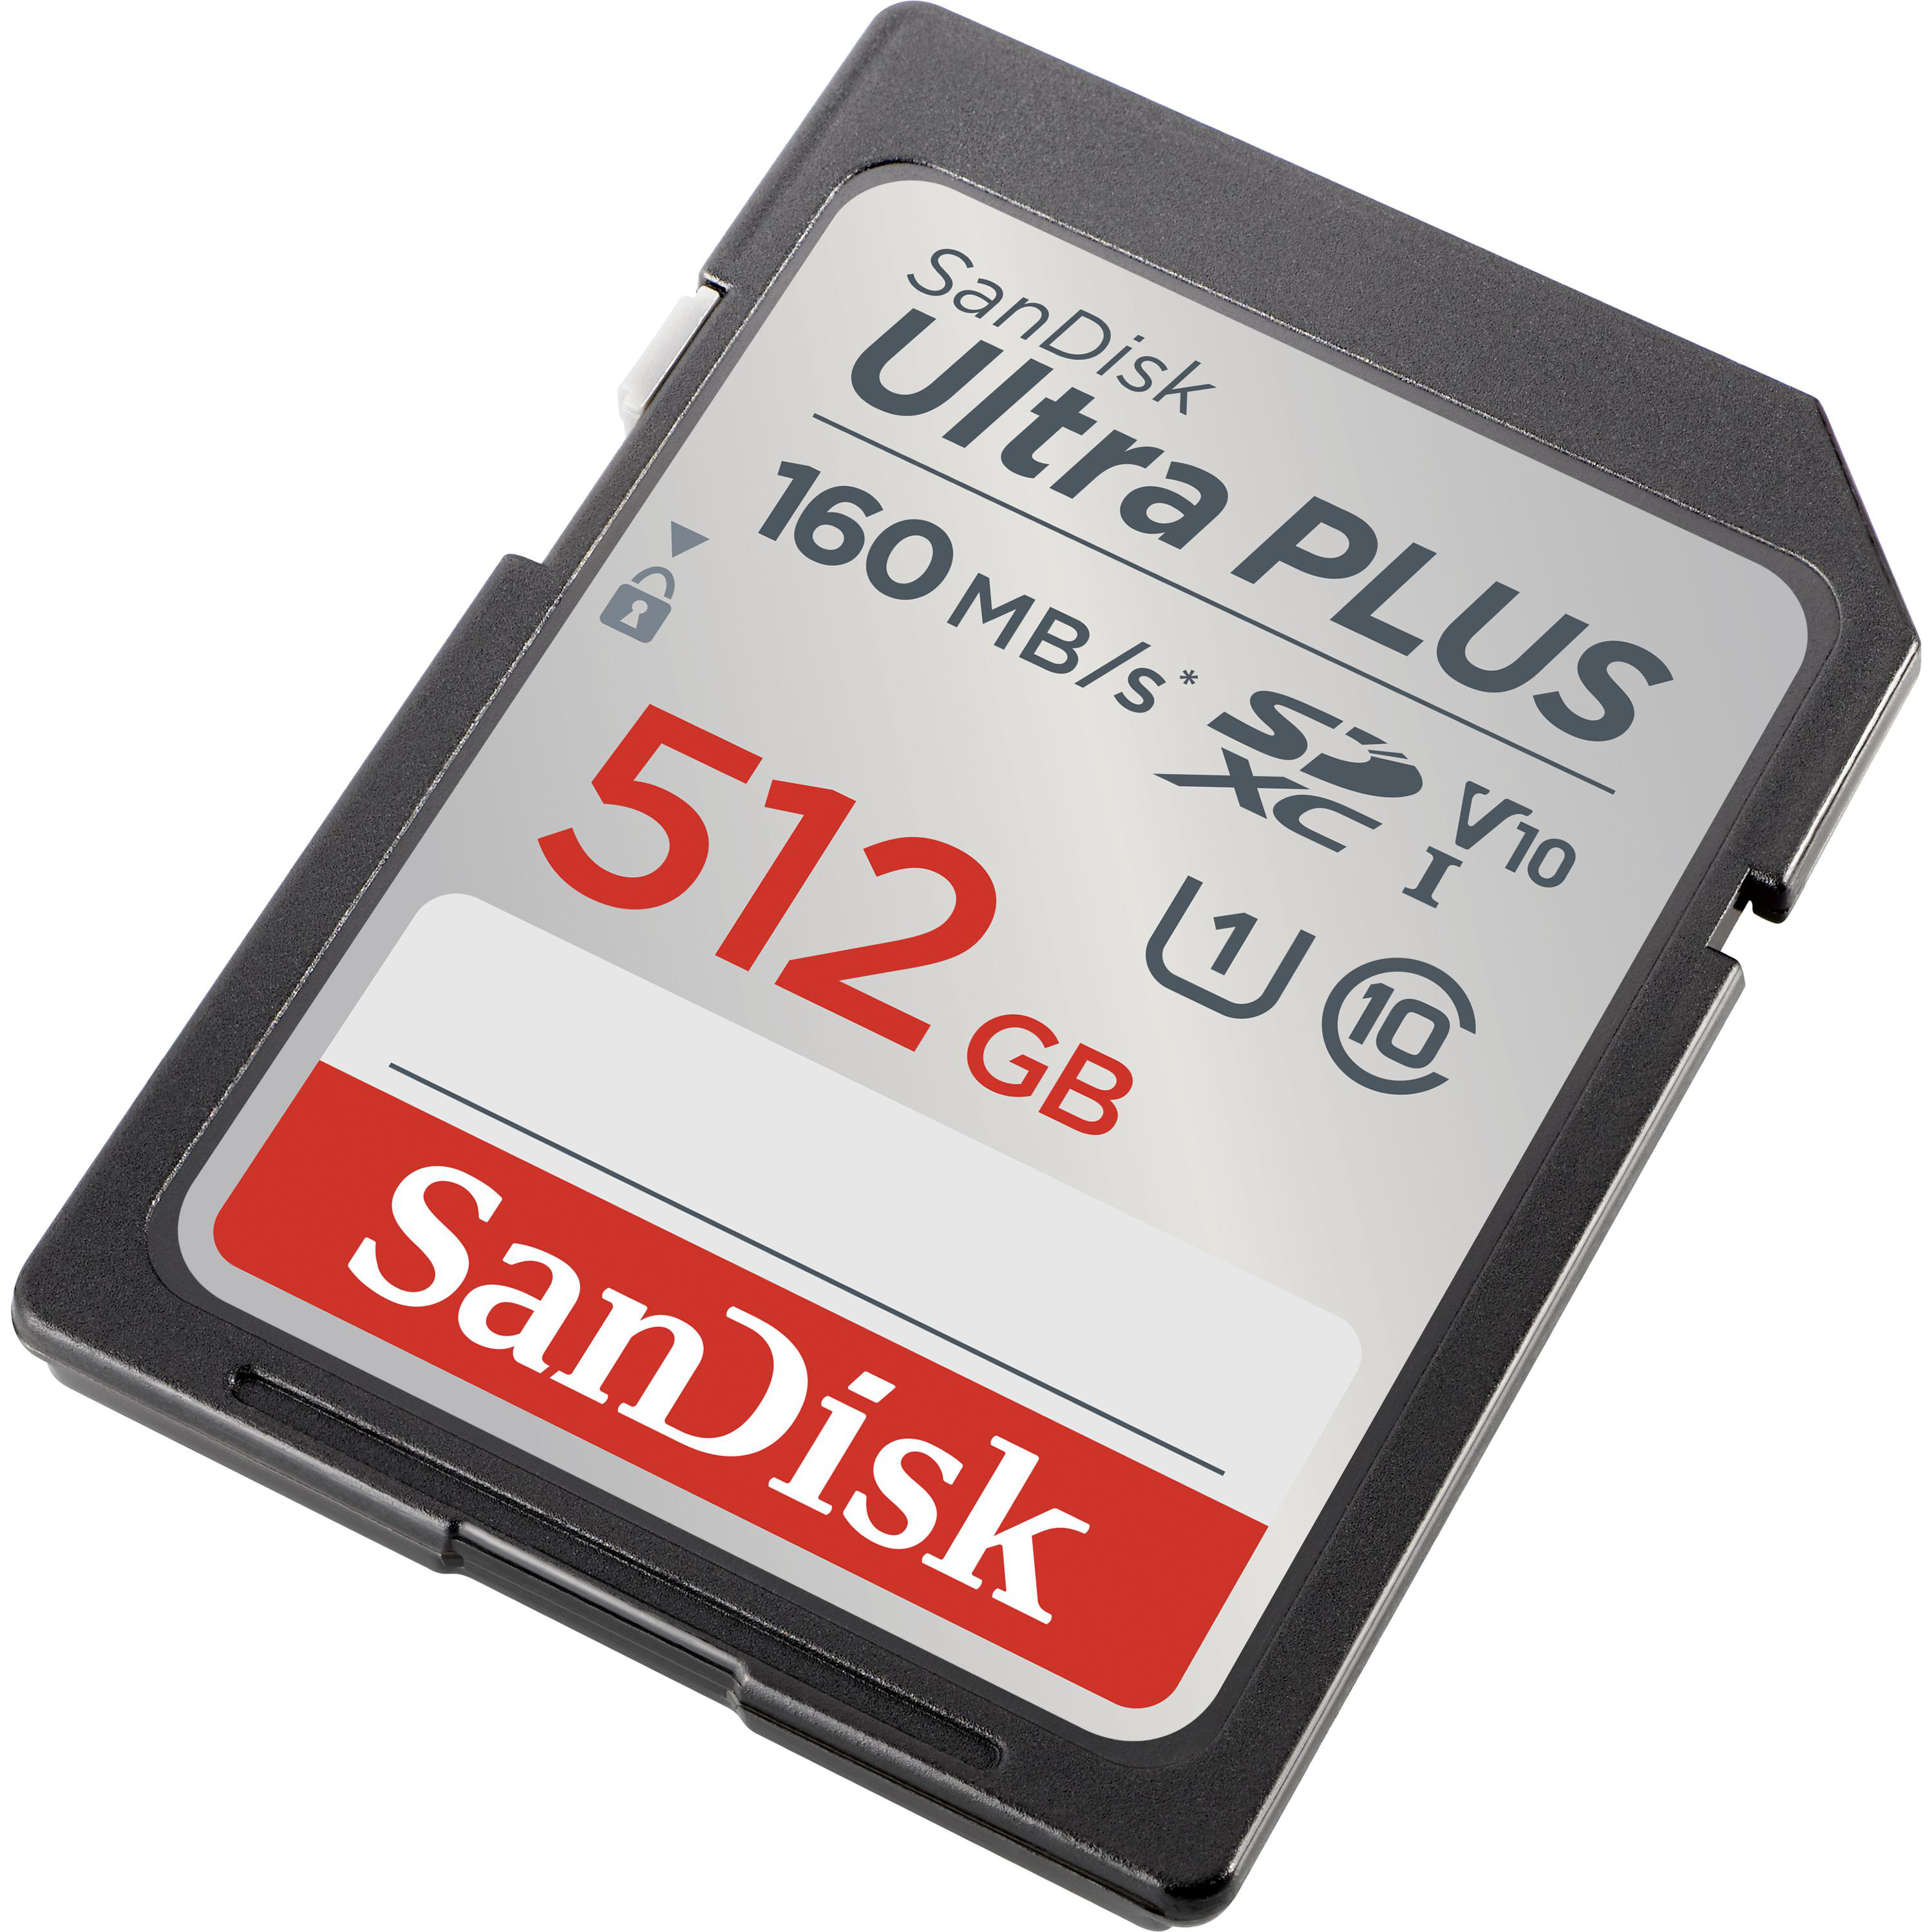 MB/s Ultra® PLUS 160 SANDISK GB, SDXC Speicherkarte, 512 SDXC™-UHS-I-Karte,